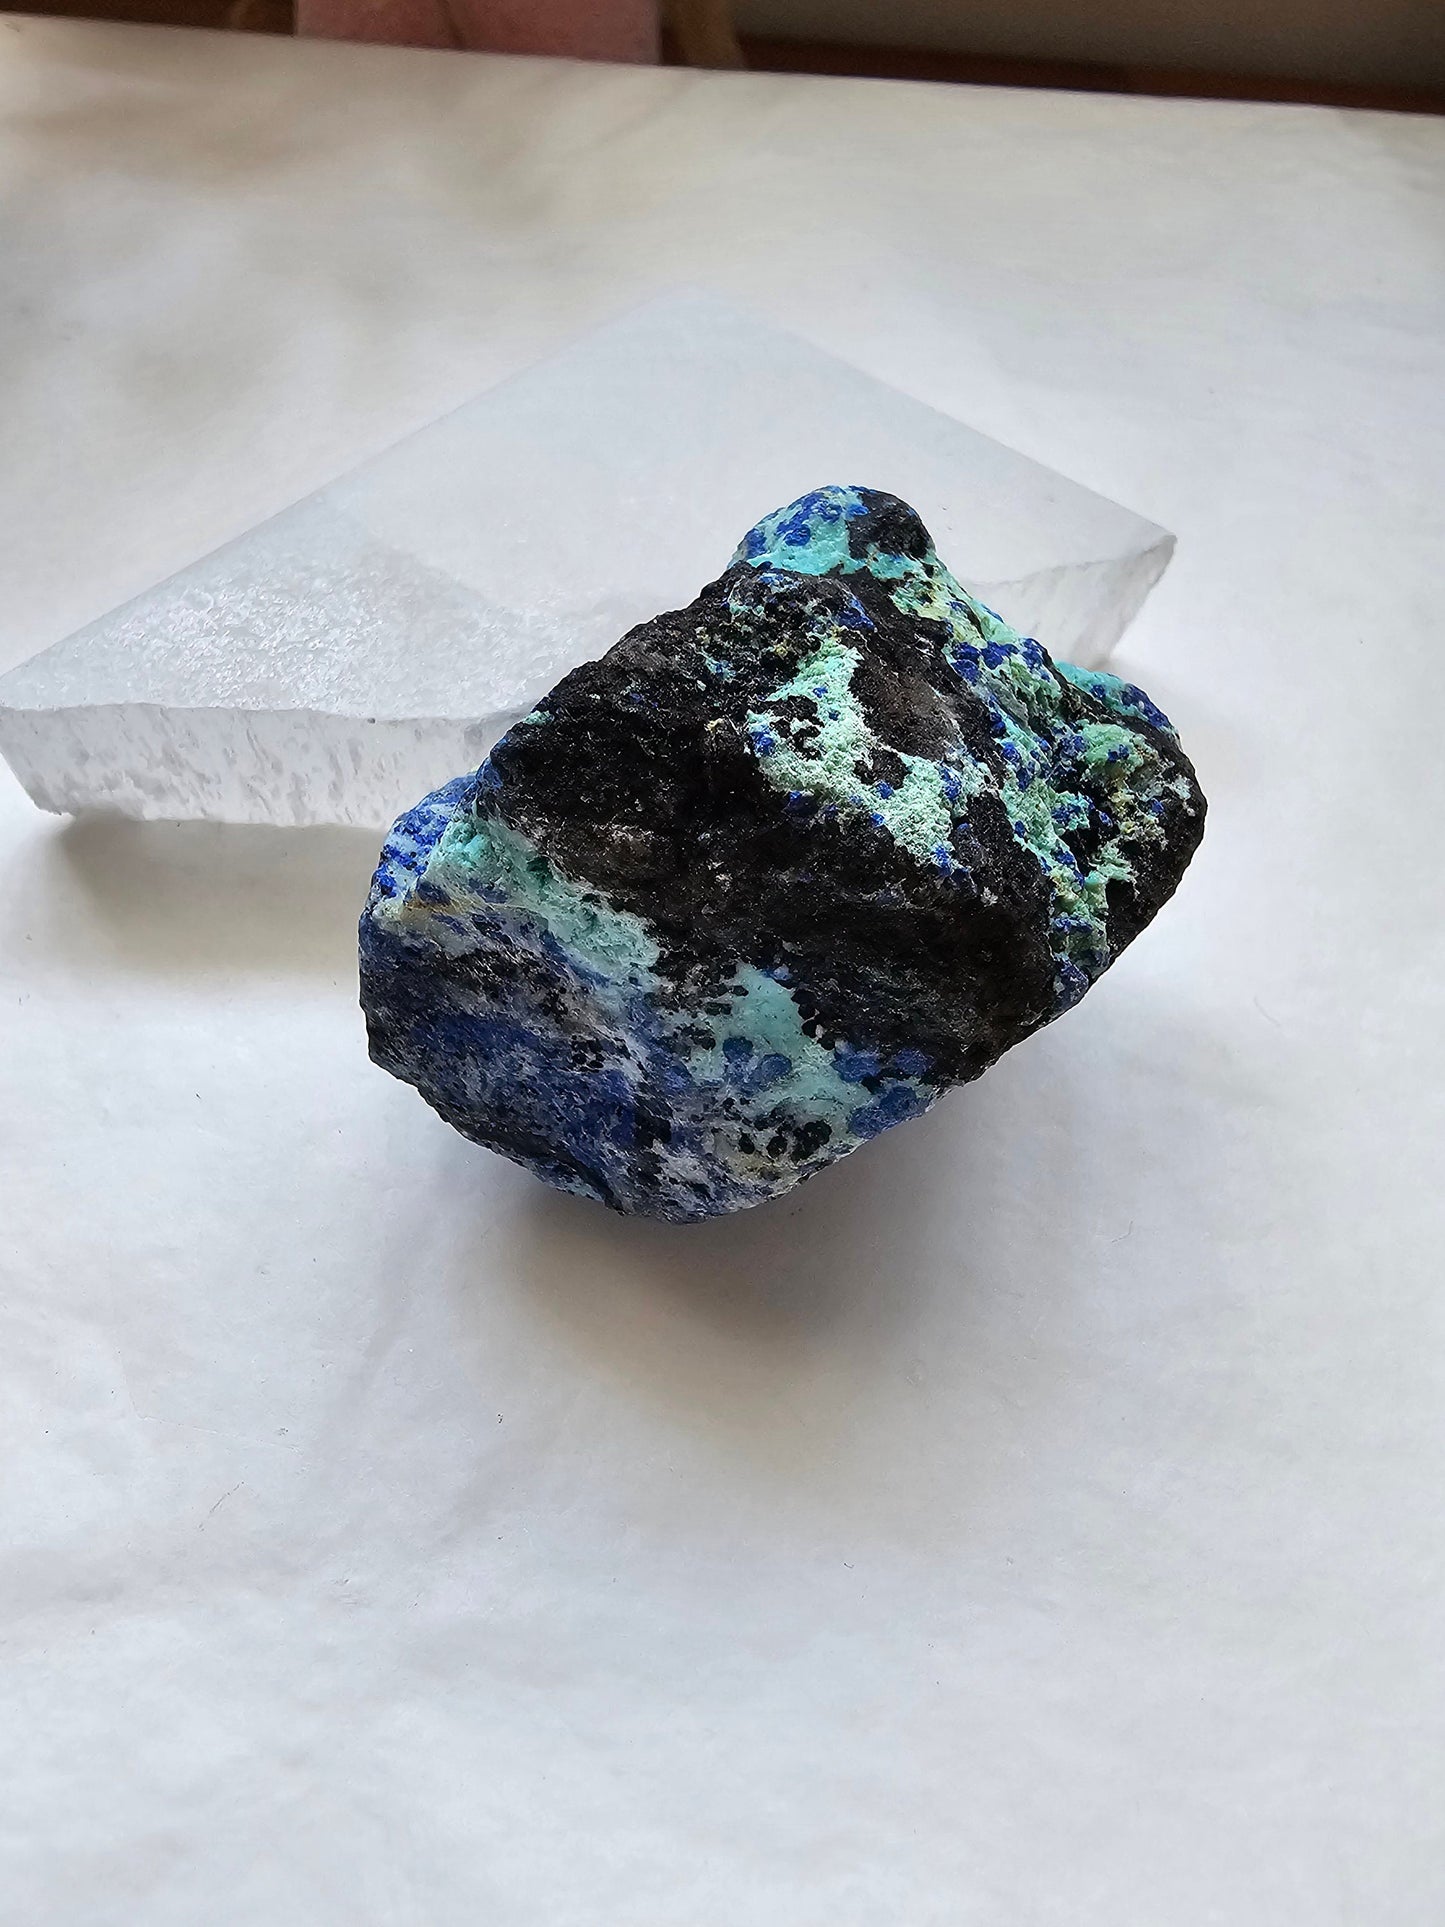 Raw Azurite specimen with vibrant aqua colour